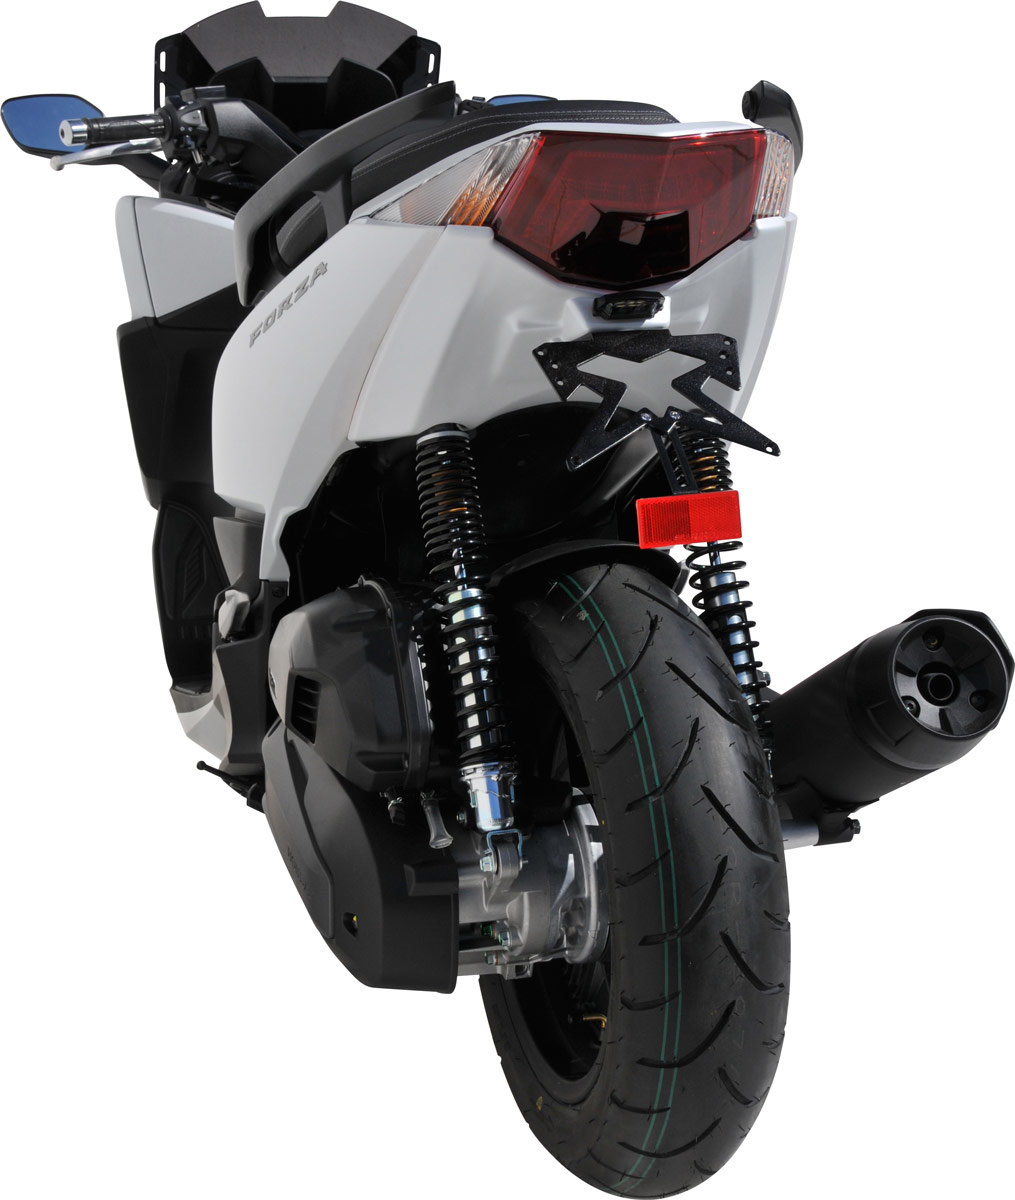 Le scooter GT peut également profiter d'un passage de roue avec support de plaque